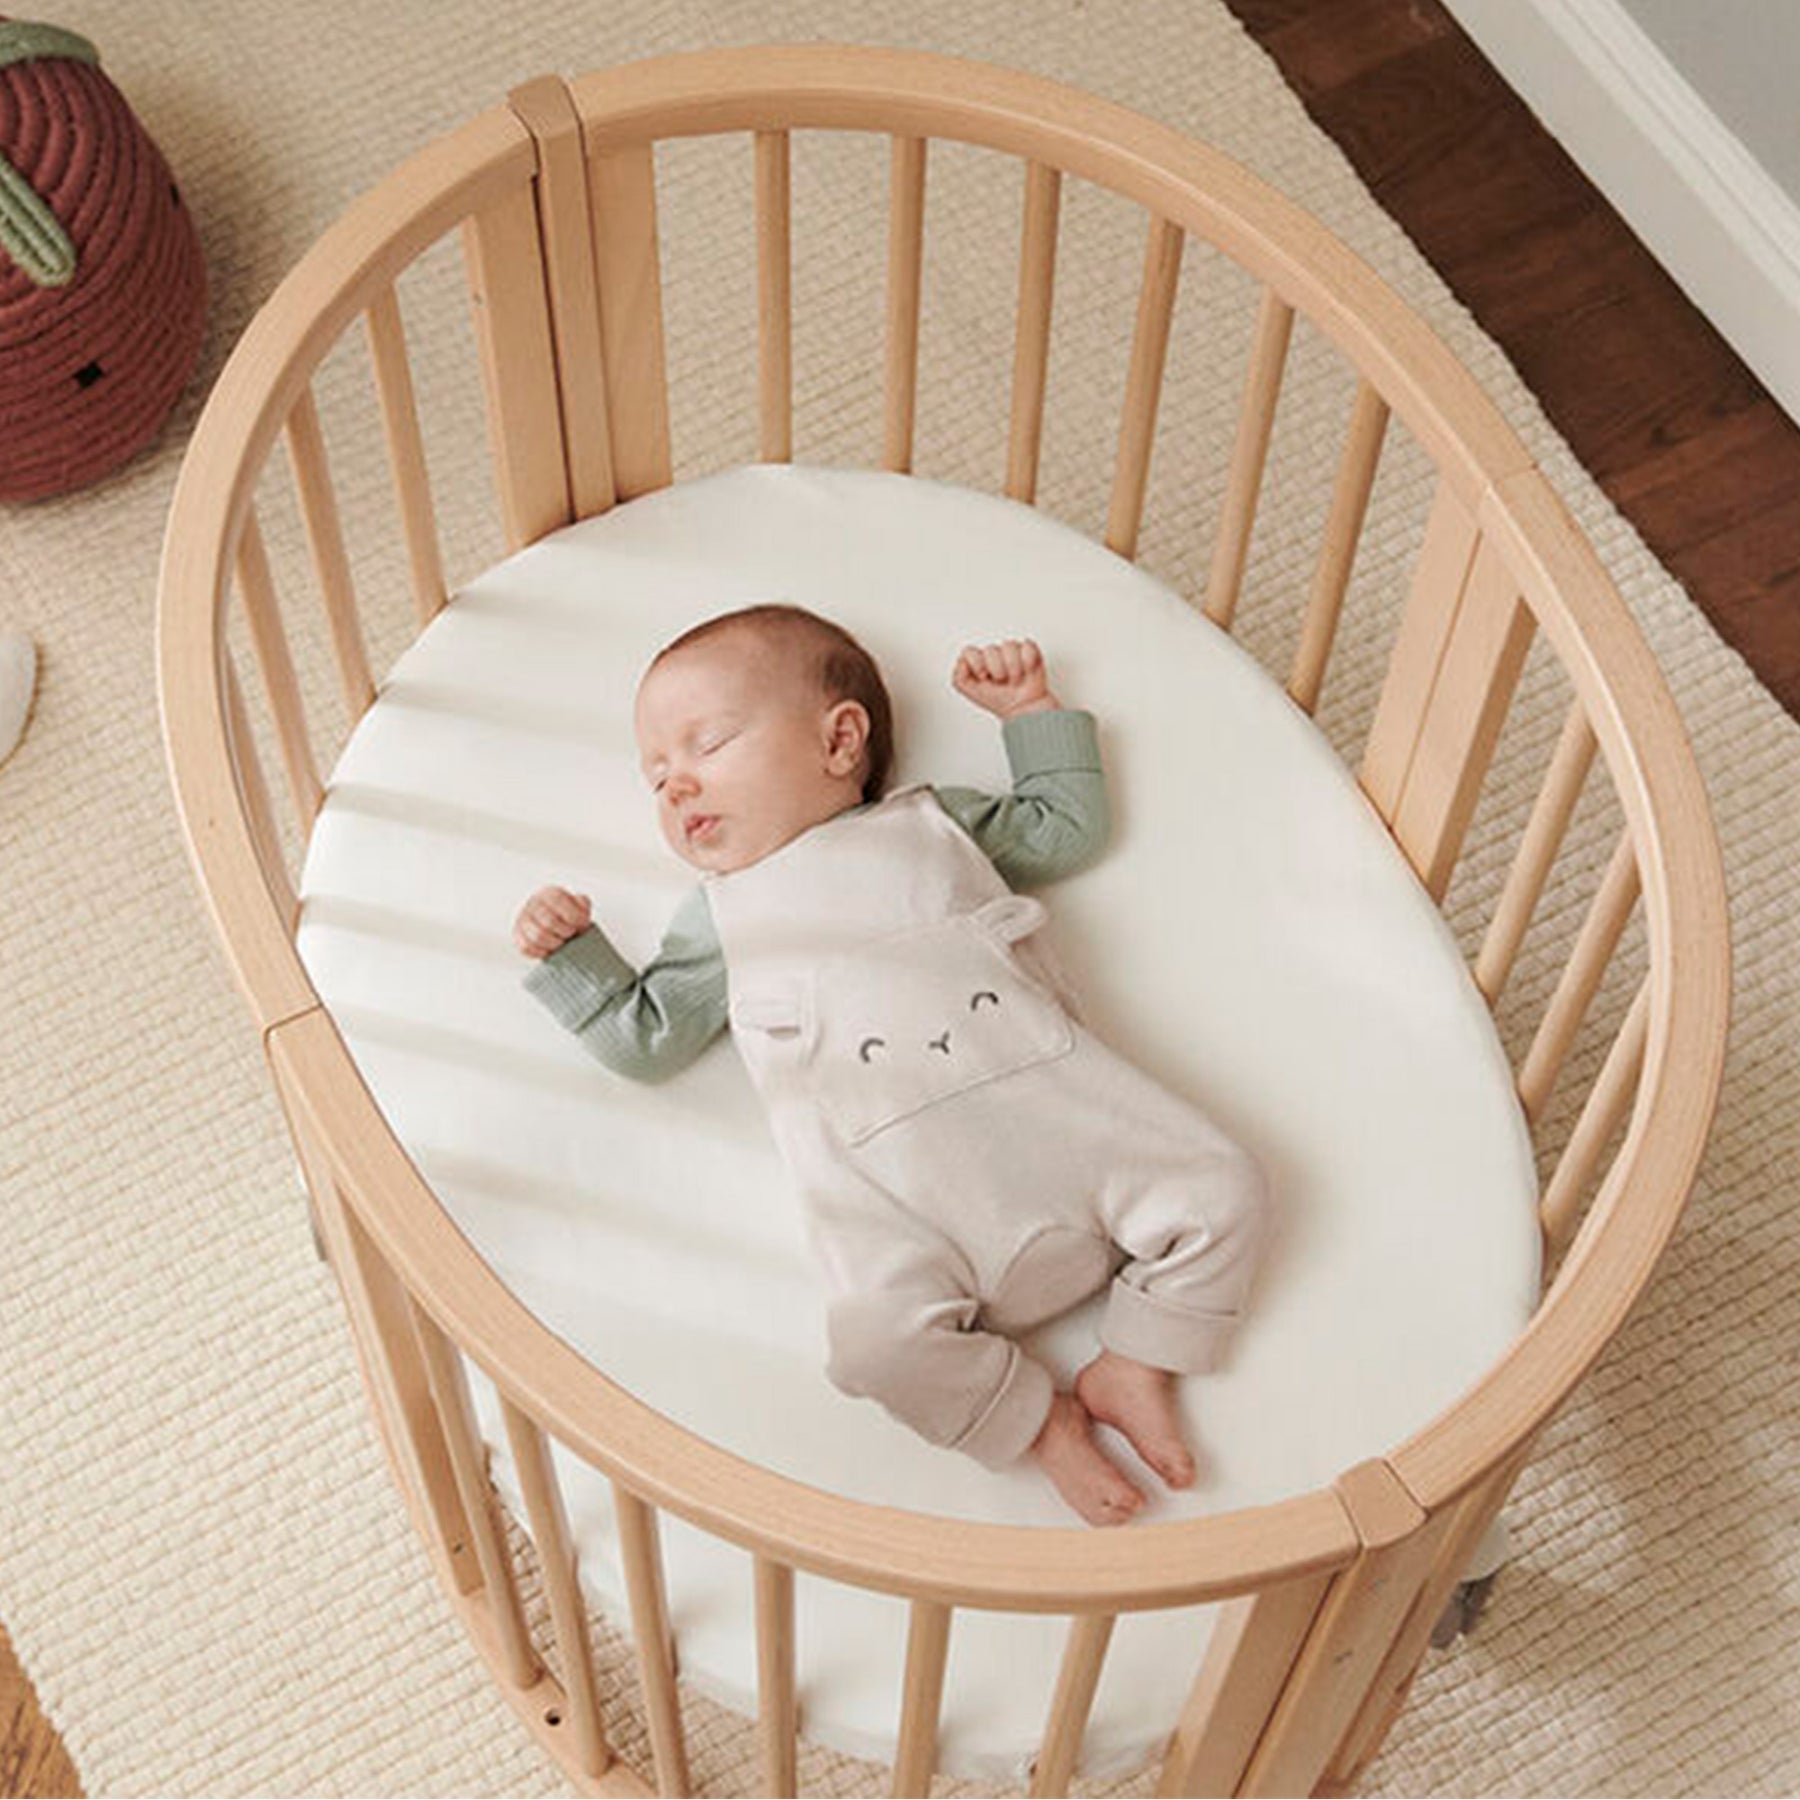  LA Baby Cuna compacta de madera no plegable, natural : Bebés